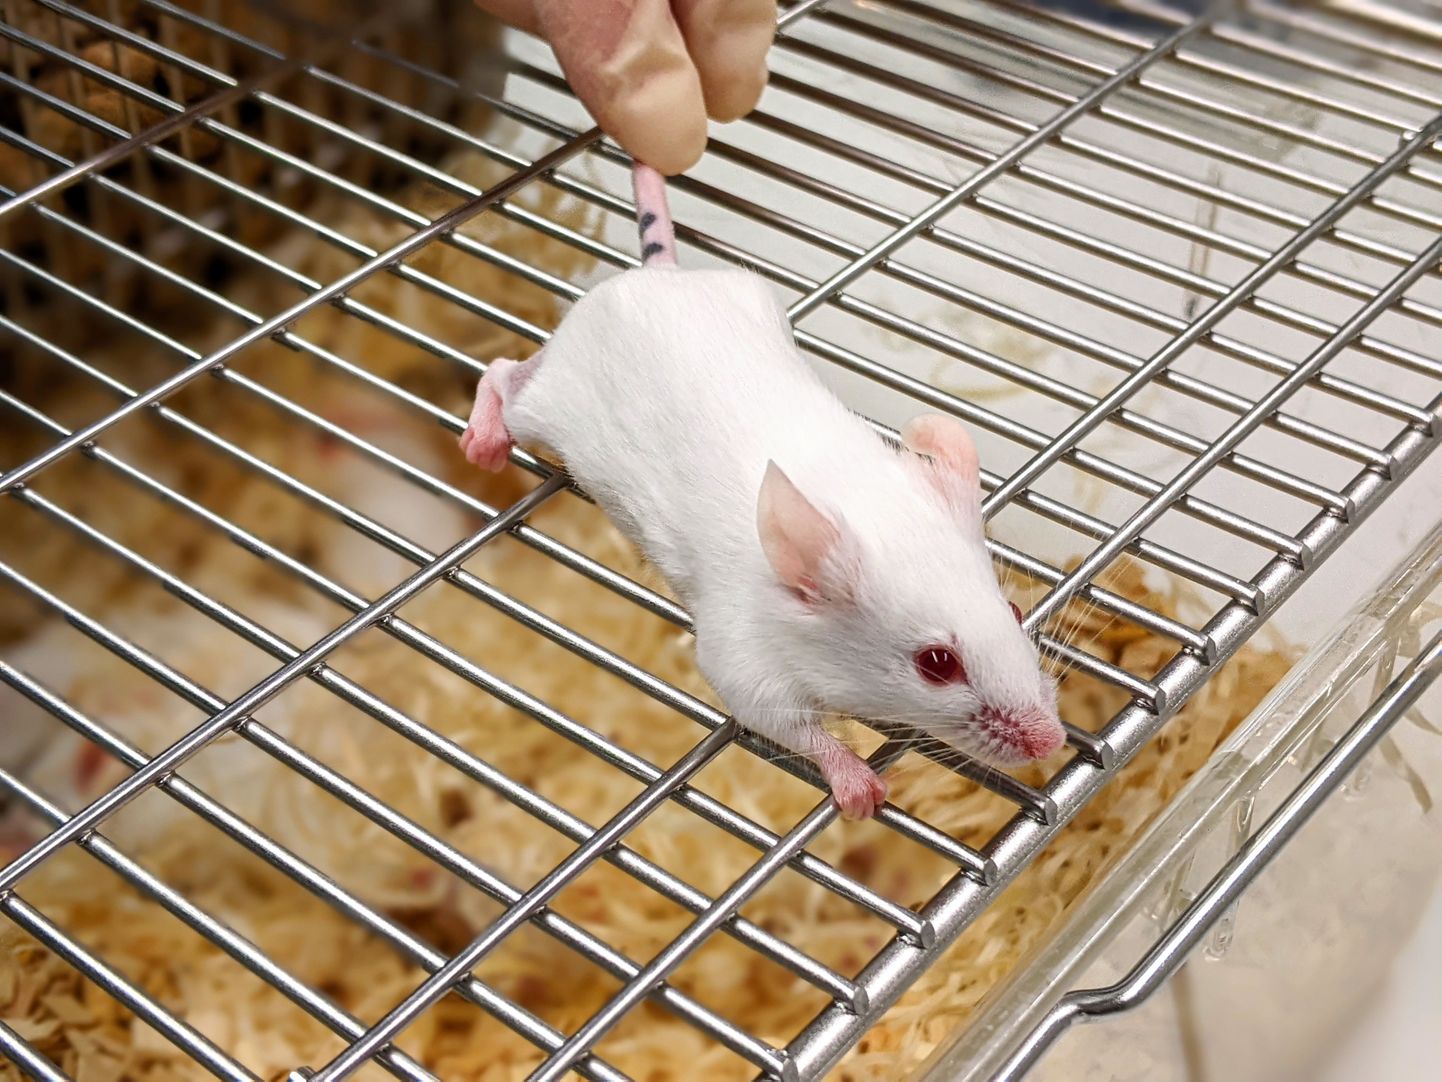 OximUNO mõjutab kasvaja arengut, kuid ei ravinud hiiri terveks.